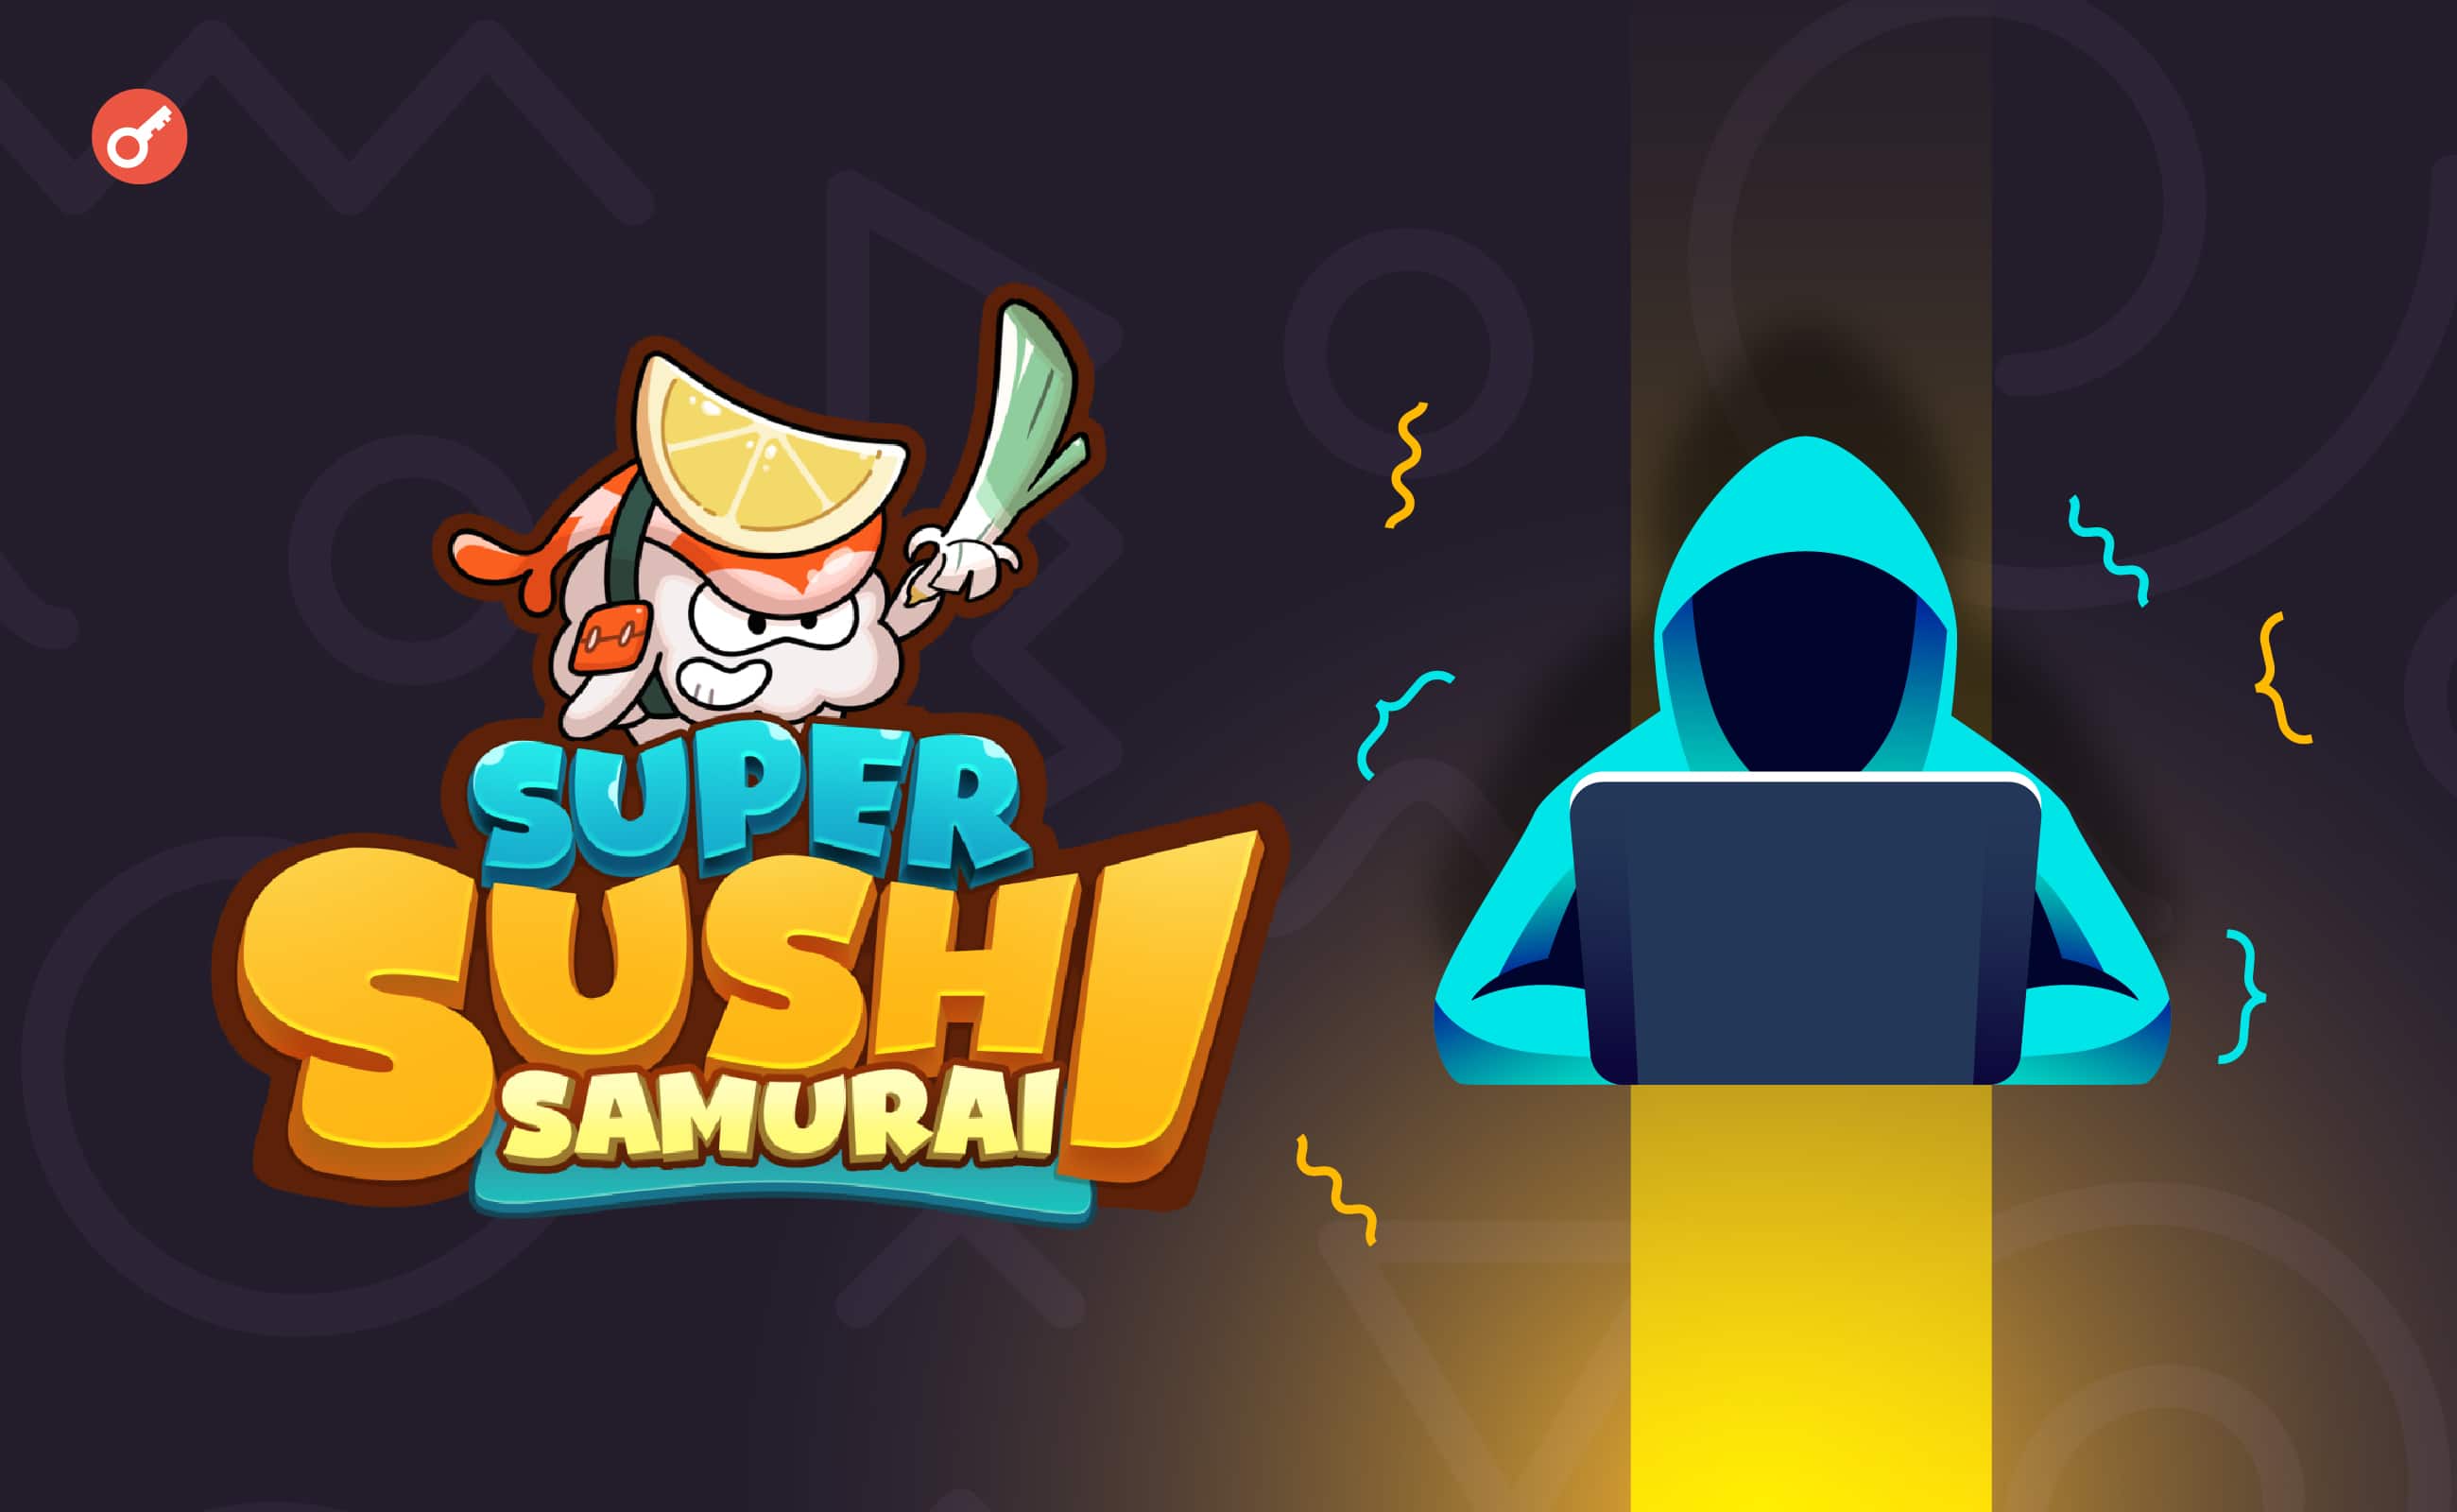 Проєкт Super Sushi Samurai на базі Blast постраждав від хакерської атаки на $4,6 млн. Головний колаж новини.